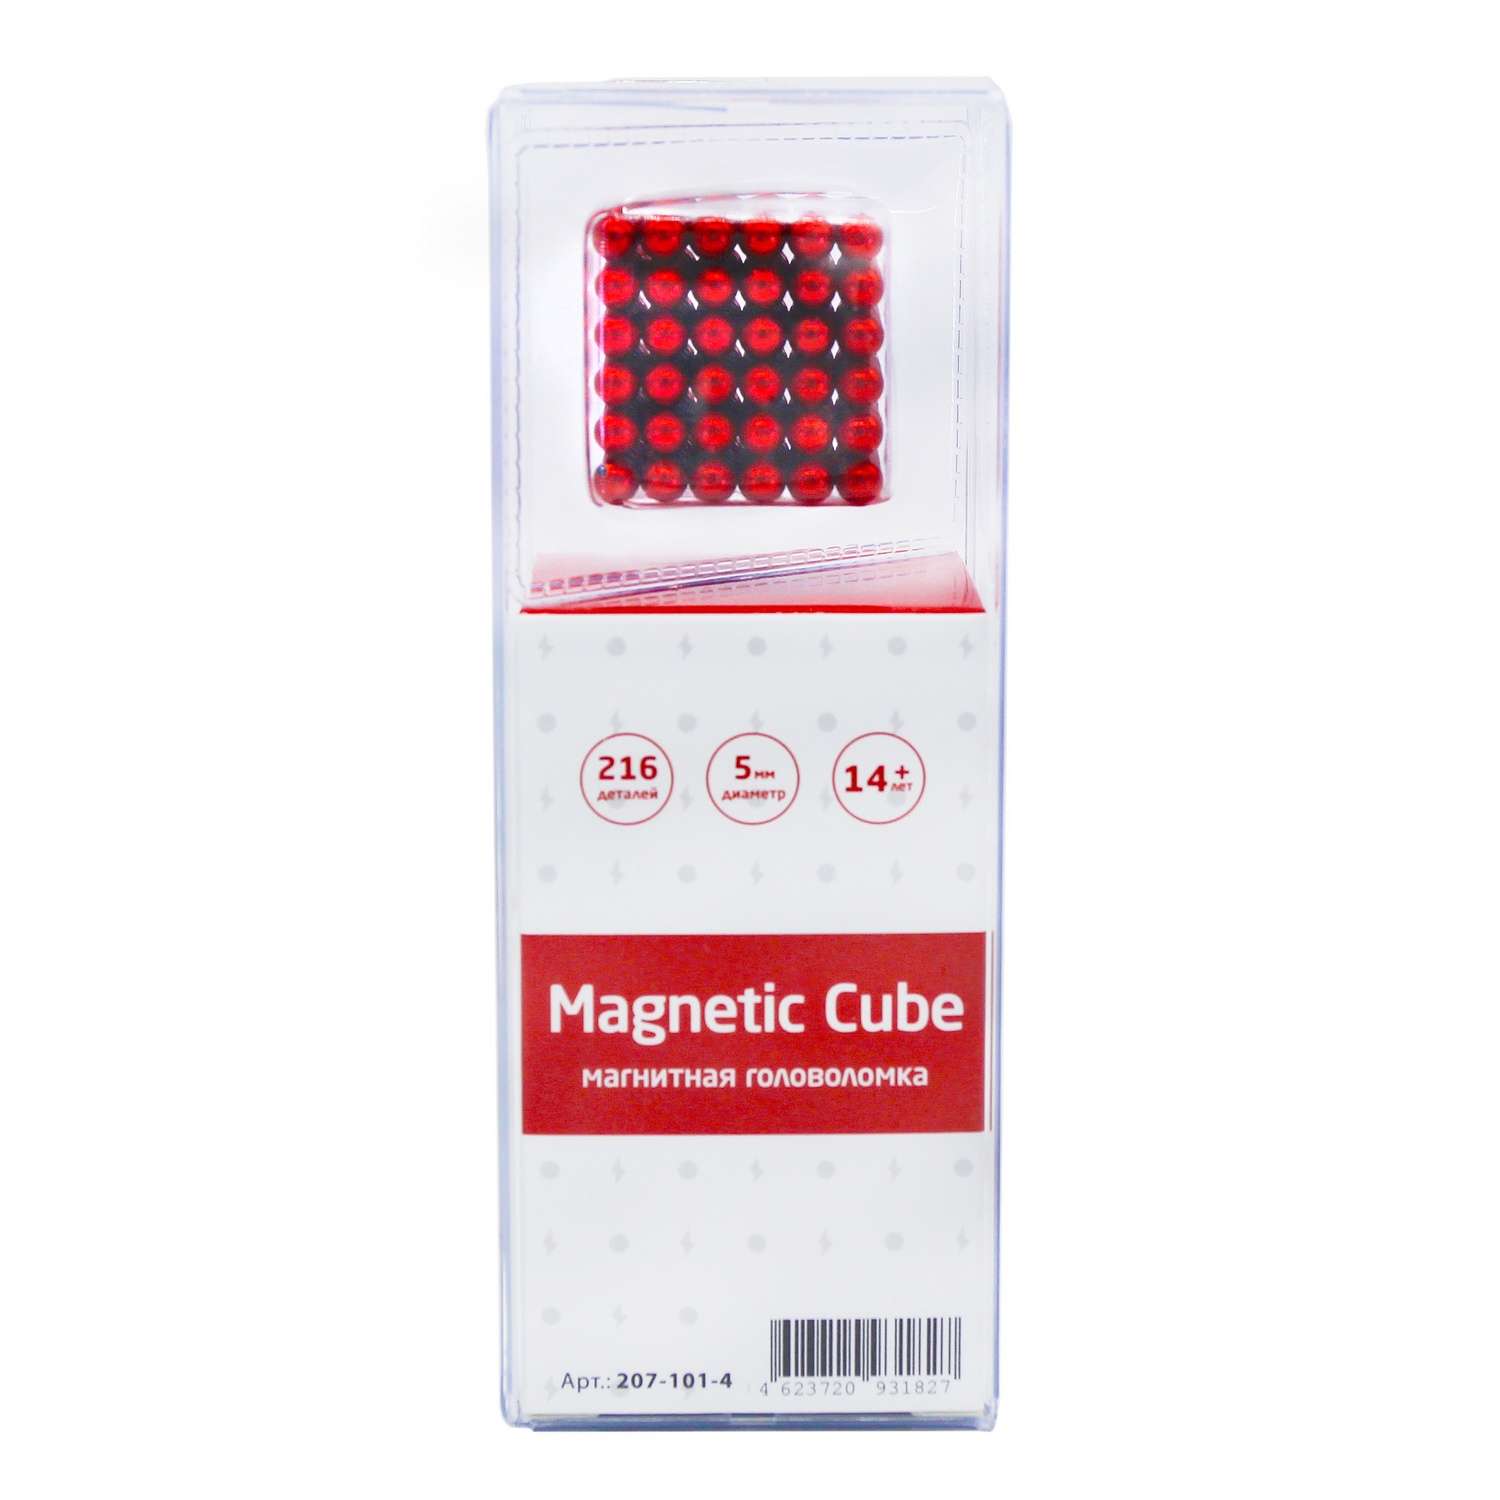 Головоломка магнитная Magnetic Cube красный неокуб 216 элементов - фото 3